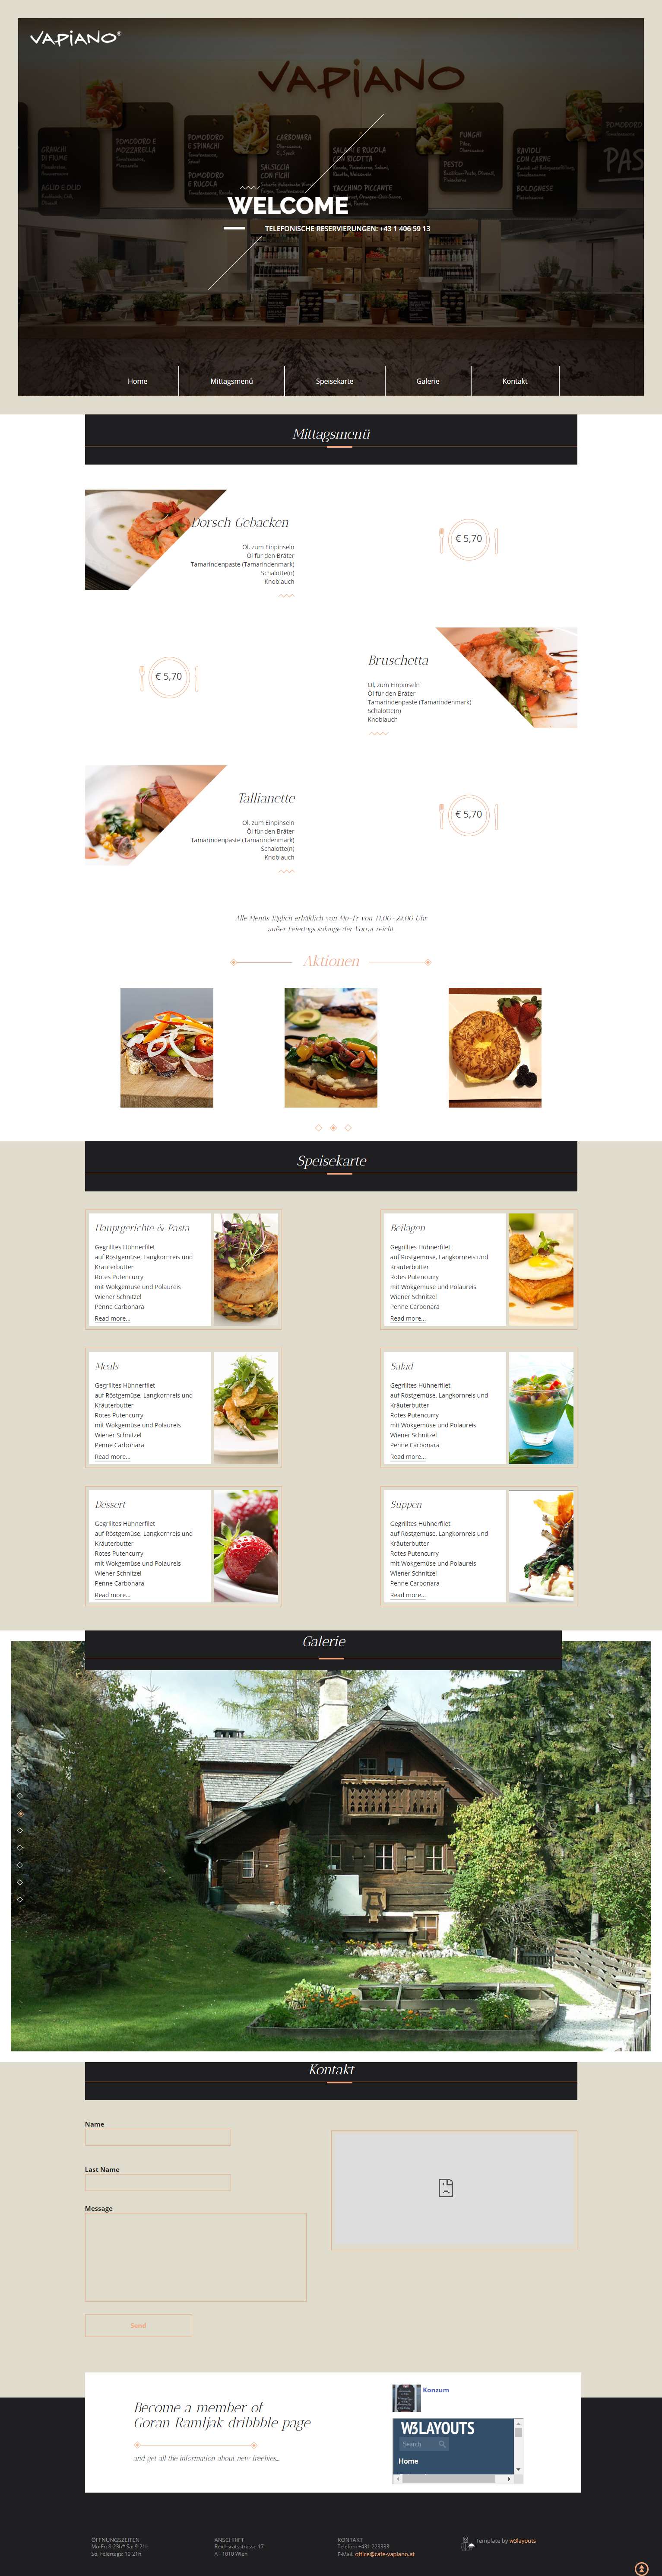 白色简洁风格的格调精品餐厅整站网站源码下载